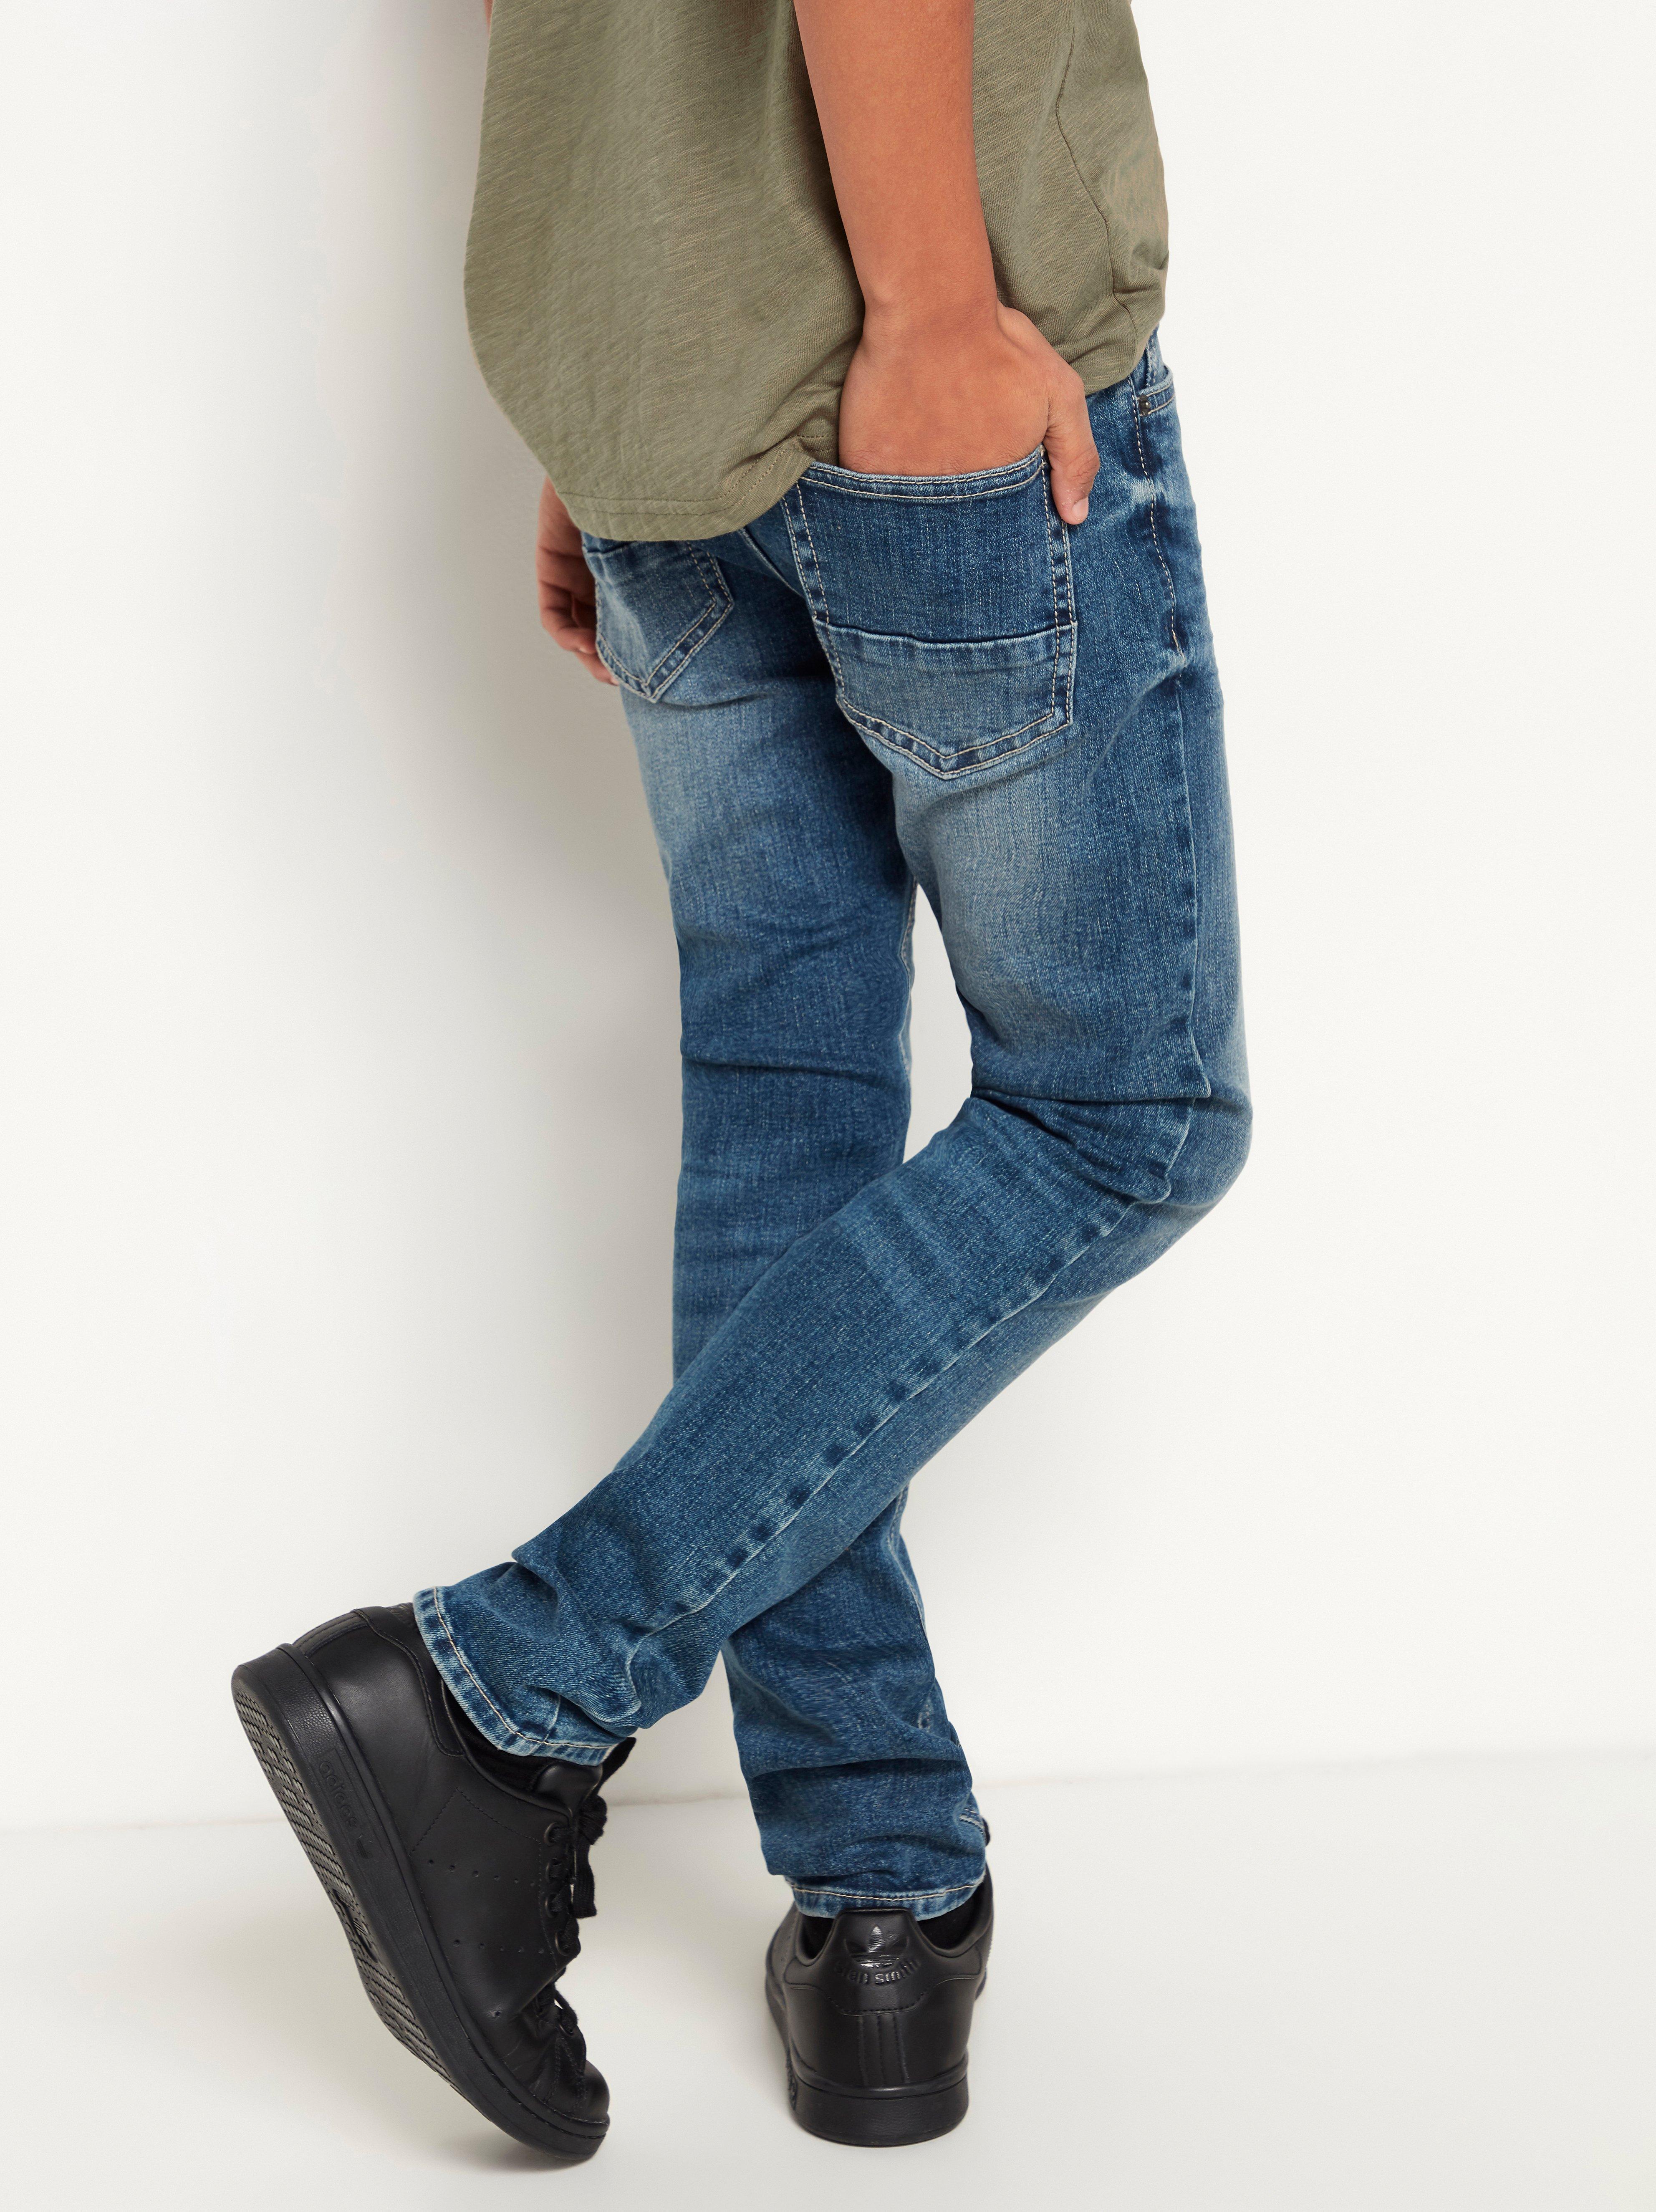 narrow leg jeans